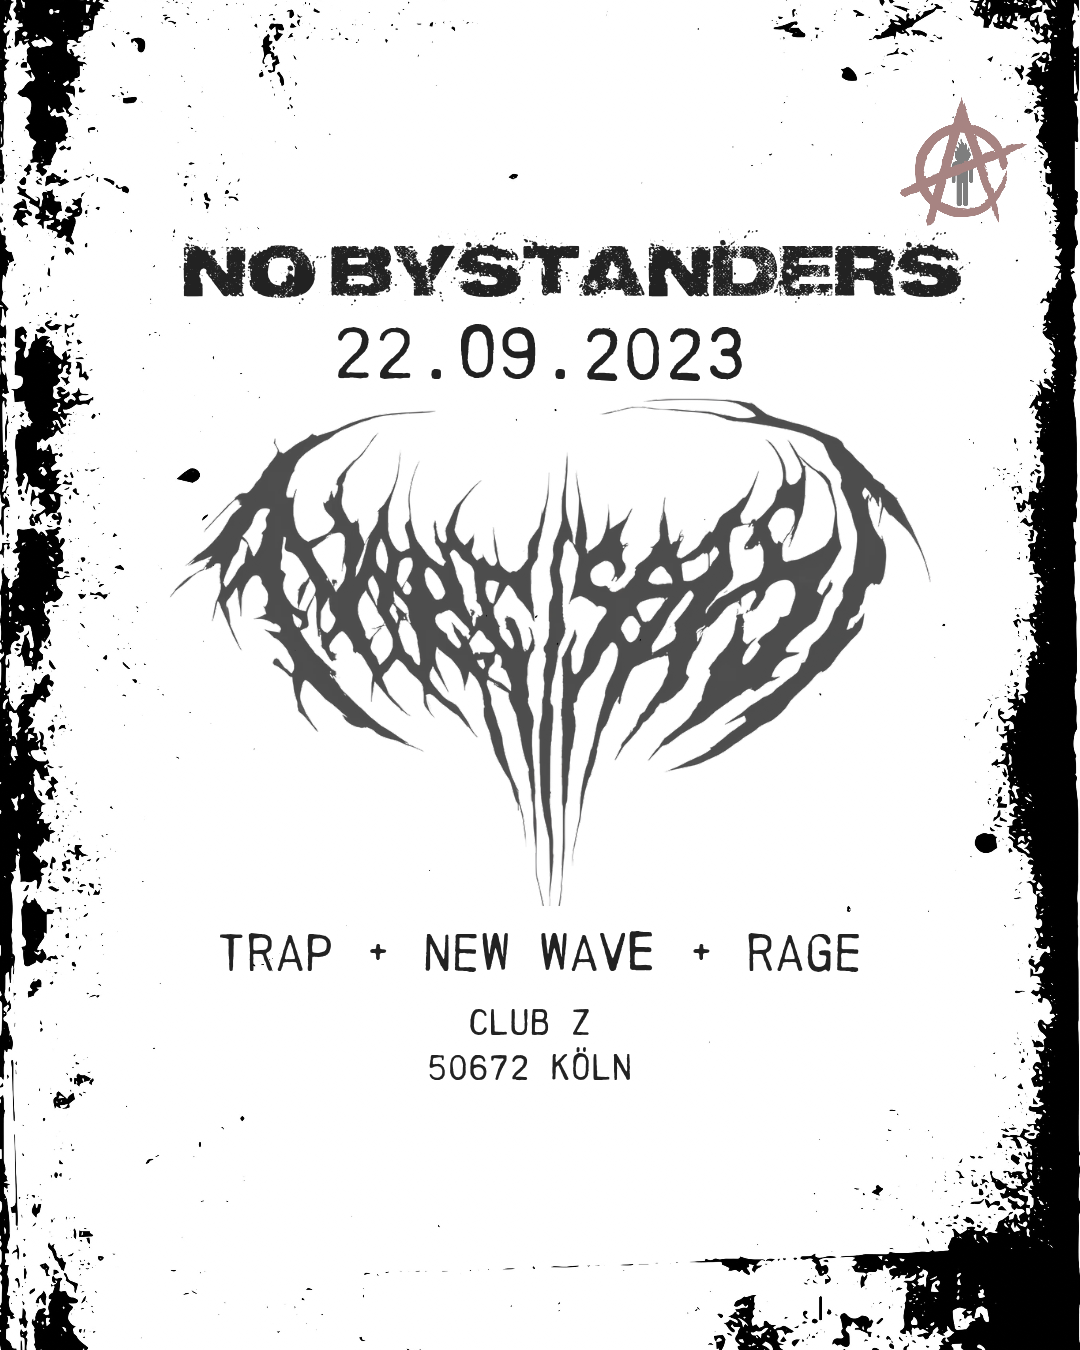 NO BYSTANDERS, Freitag, 22.09.2023, Trap + New Wave + Rage, Club Z, 50672 Köln